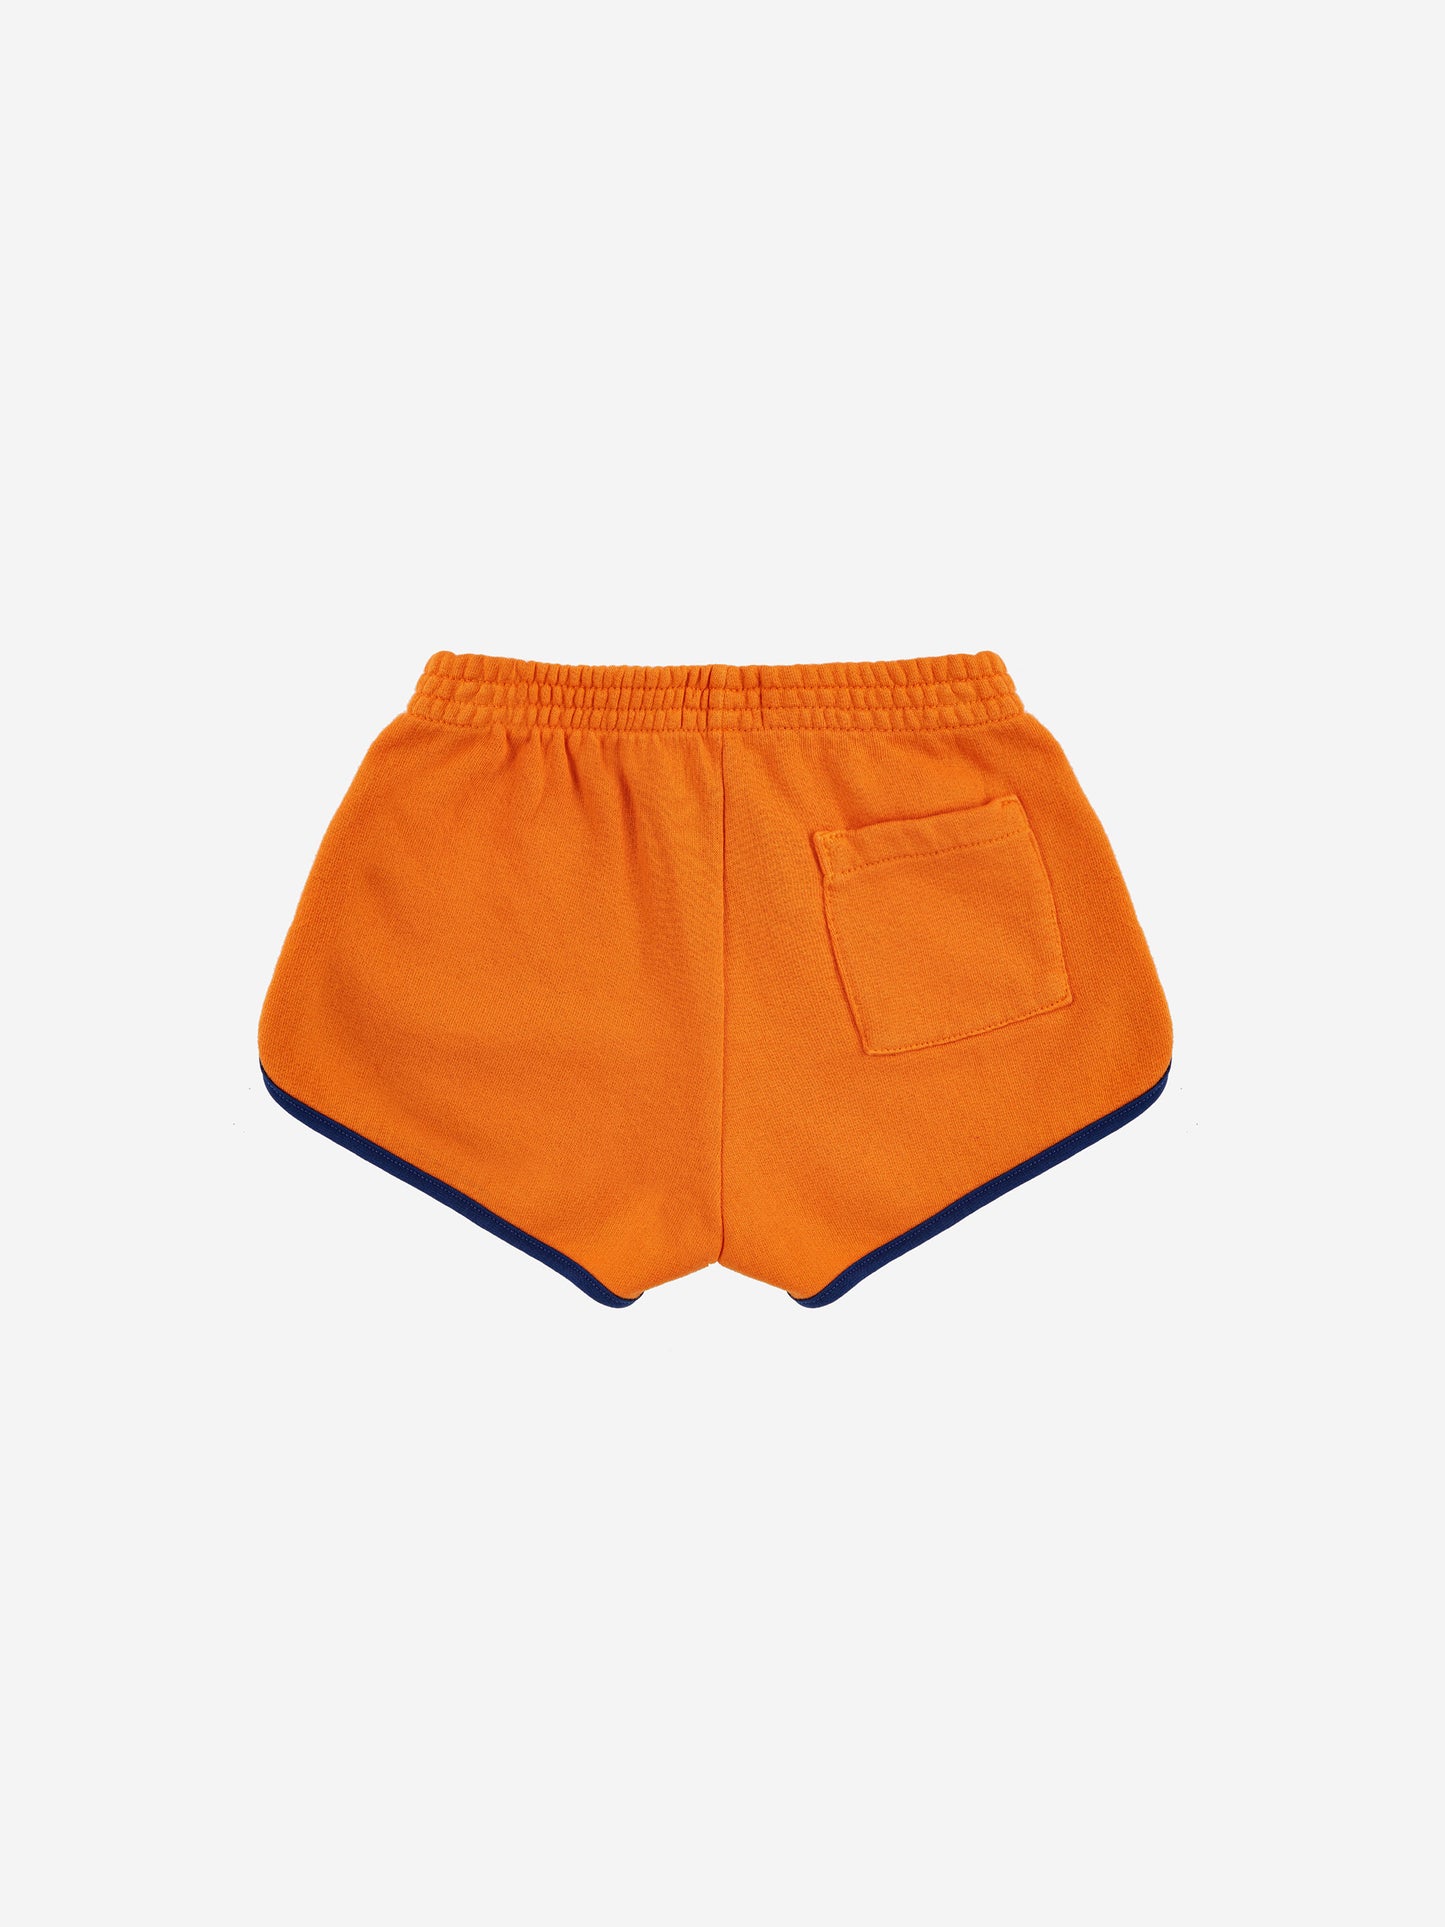 Pantalón corto naranja BC